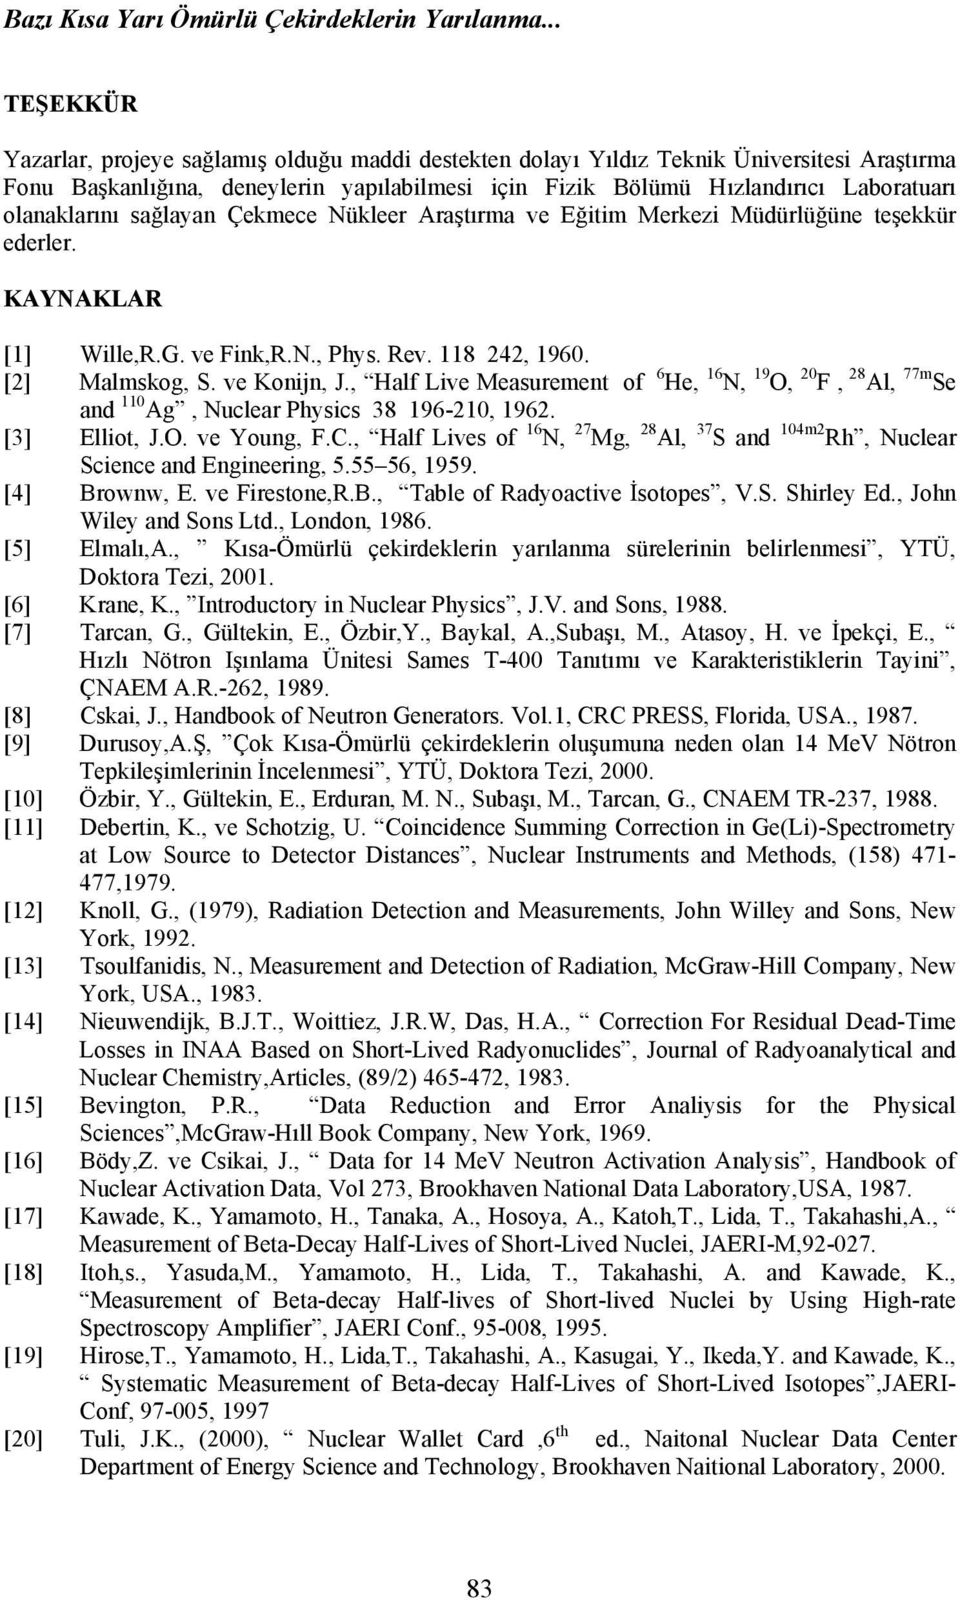 olanaklarını sağlayan Çekmece Nükleer Araştırma ve Eğitim Merkezi Müdürlüğüne teşekkür ederler. KAYNAKLAR [1] Wille,R.G. ve Fink,R.N., Phys. Rev. 118 242, 1960. [2] Malmskog, S. ve Konijn, J.